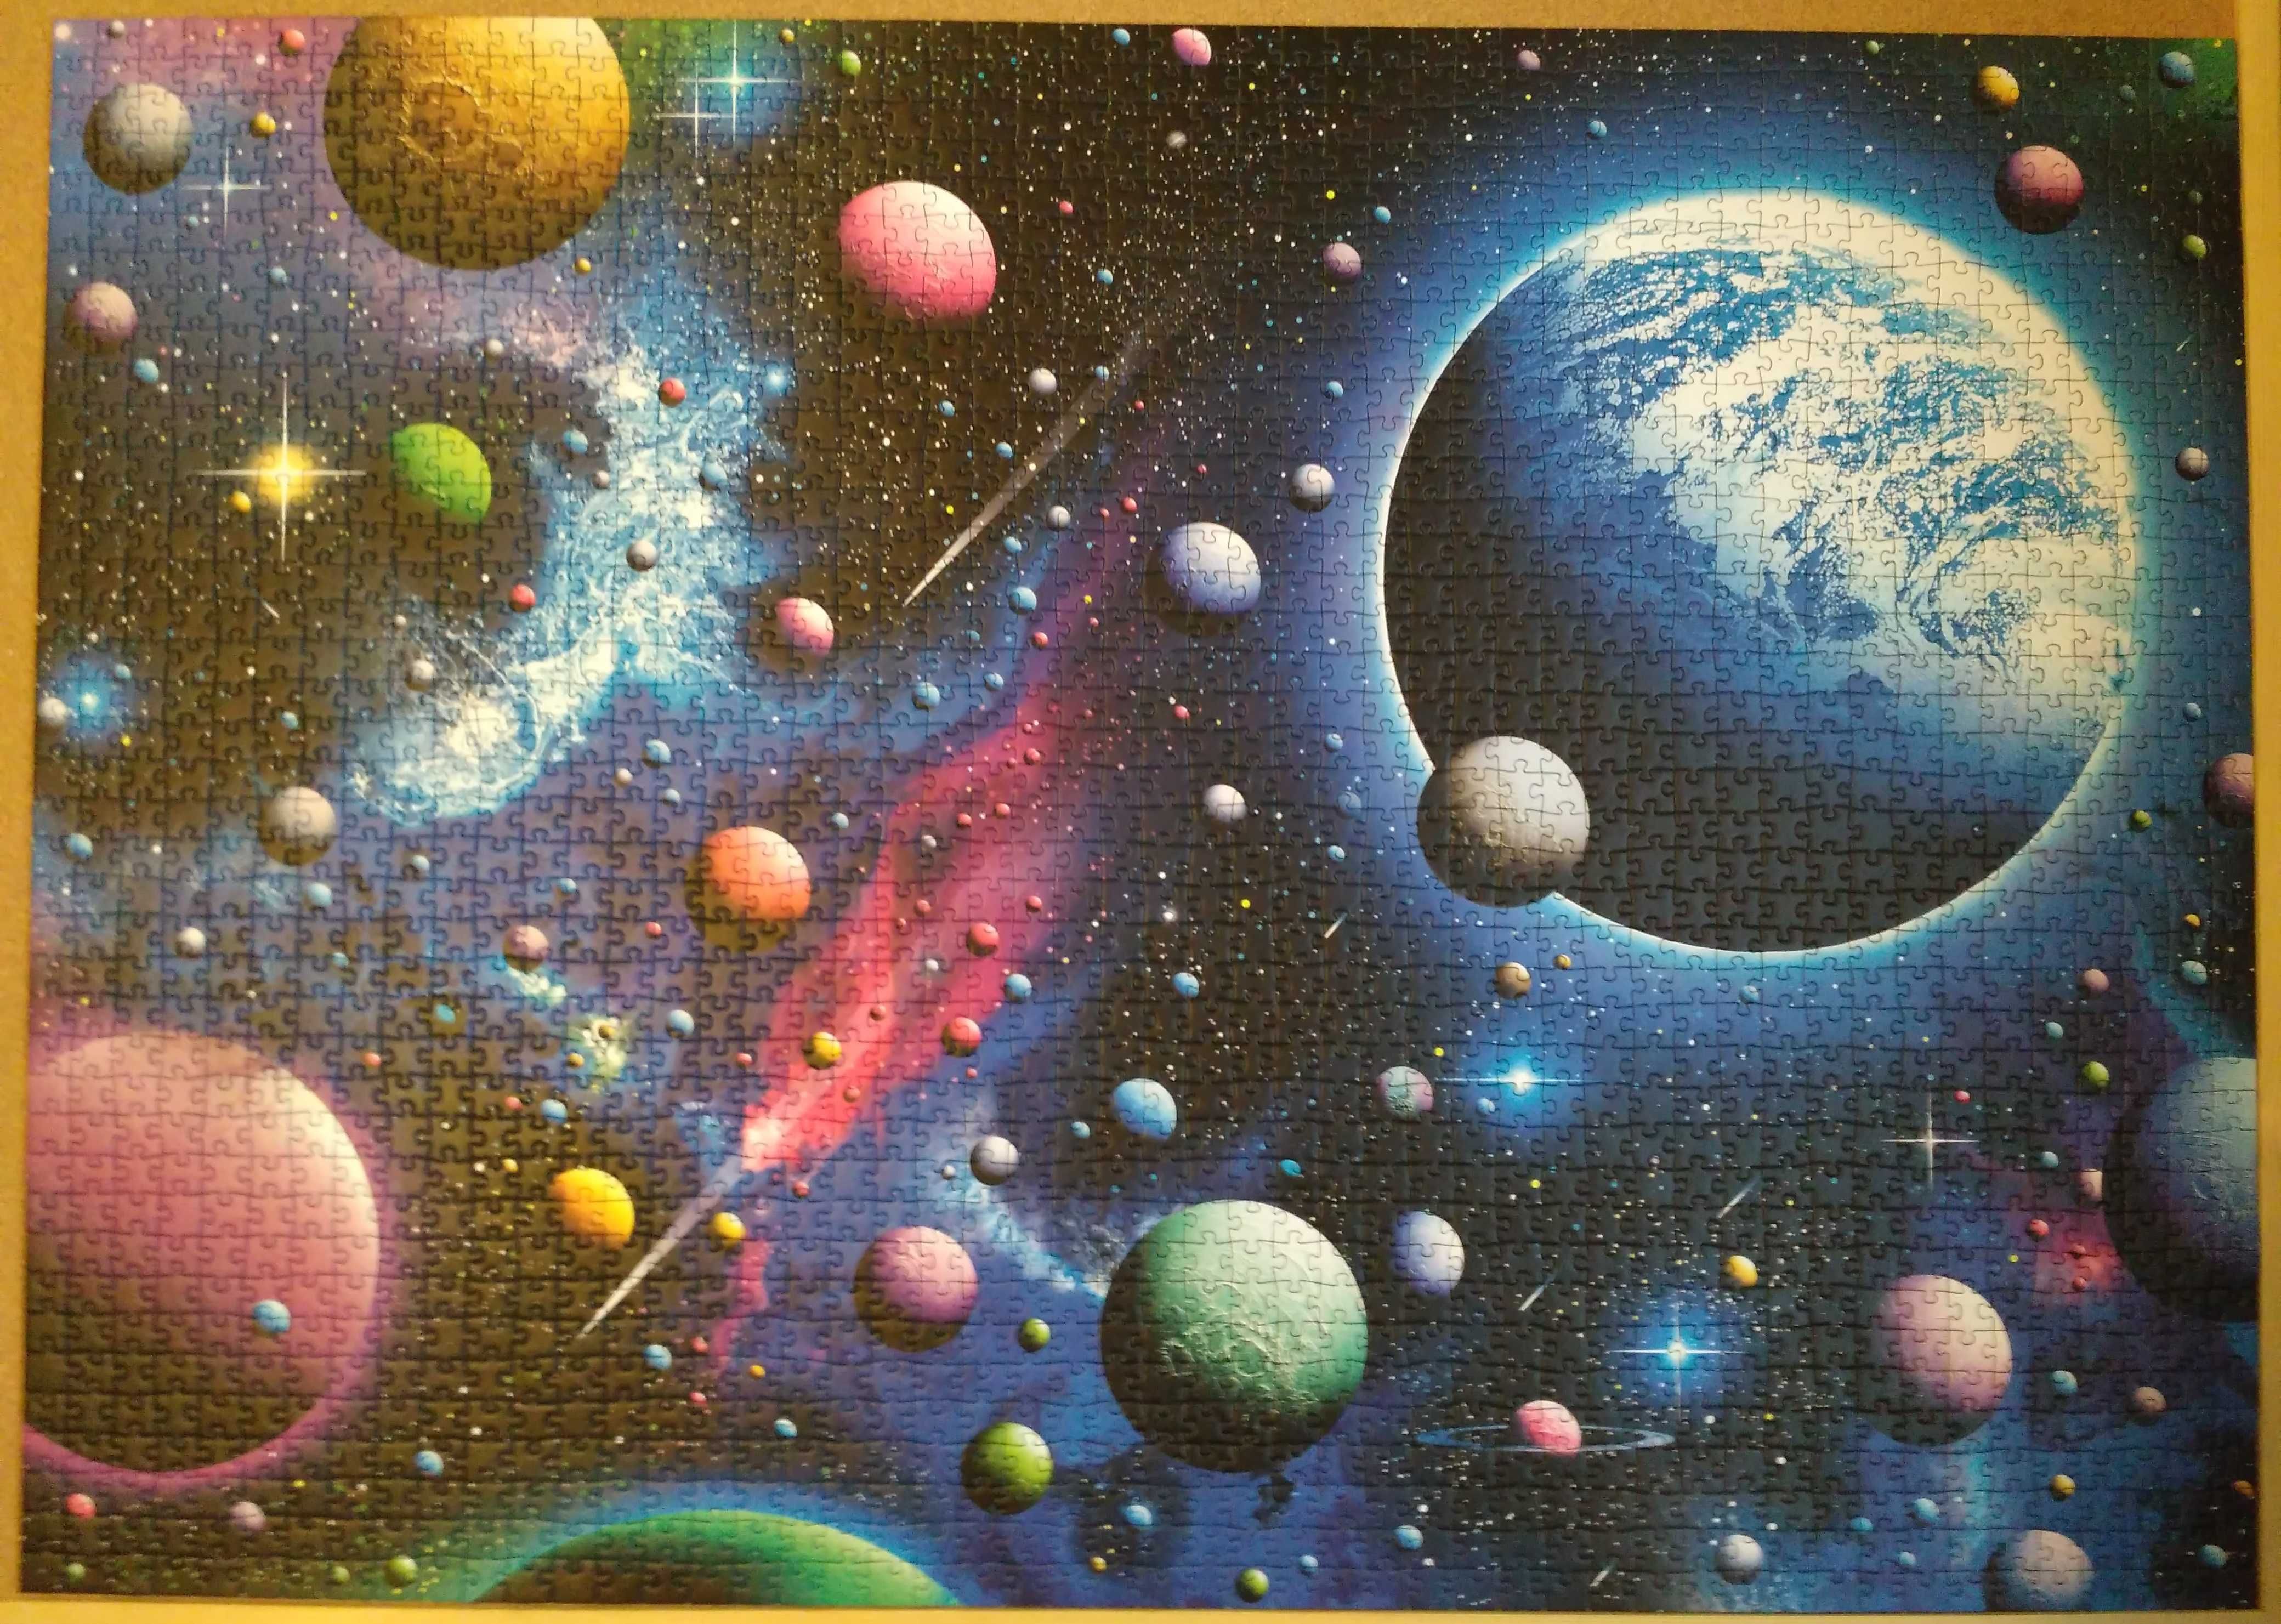 Puzzle Schmidt 2000 - Captivating Cosmos